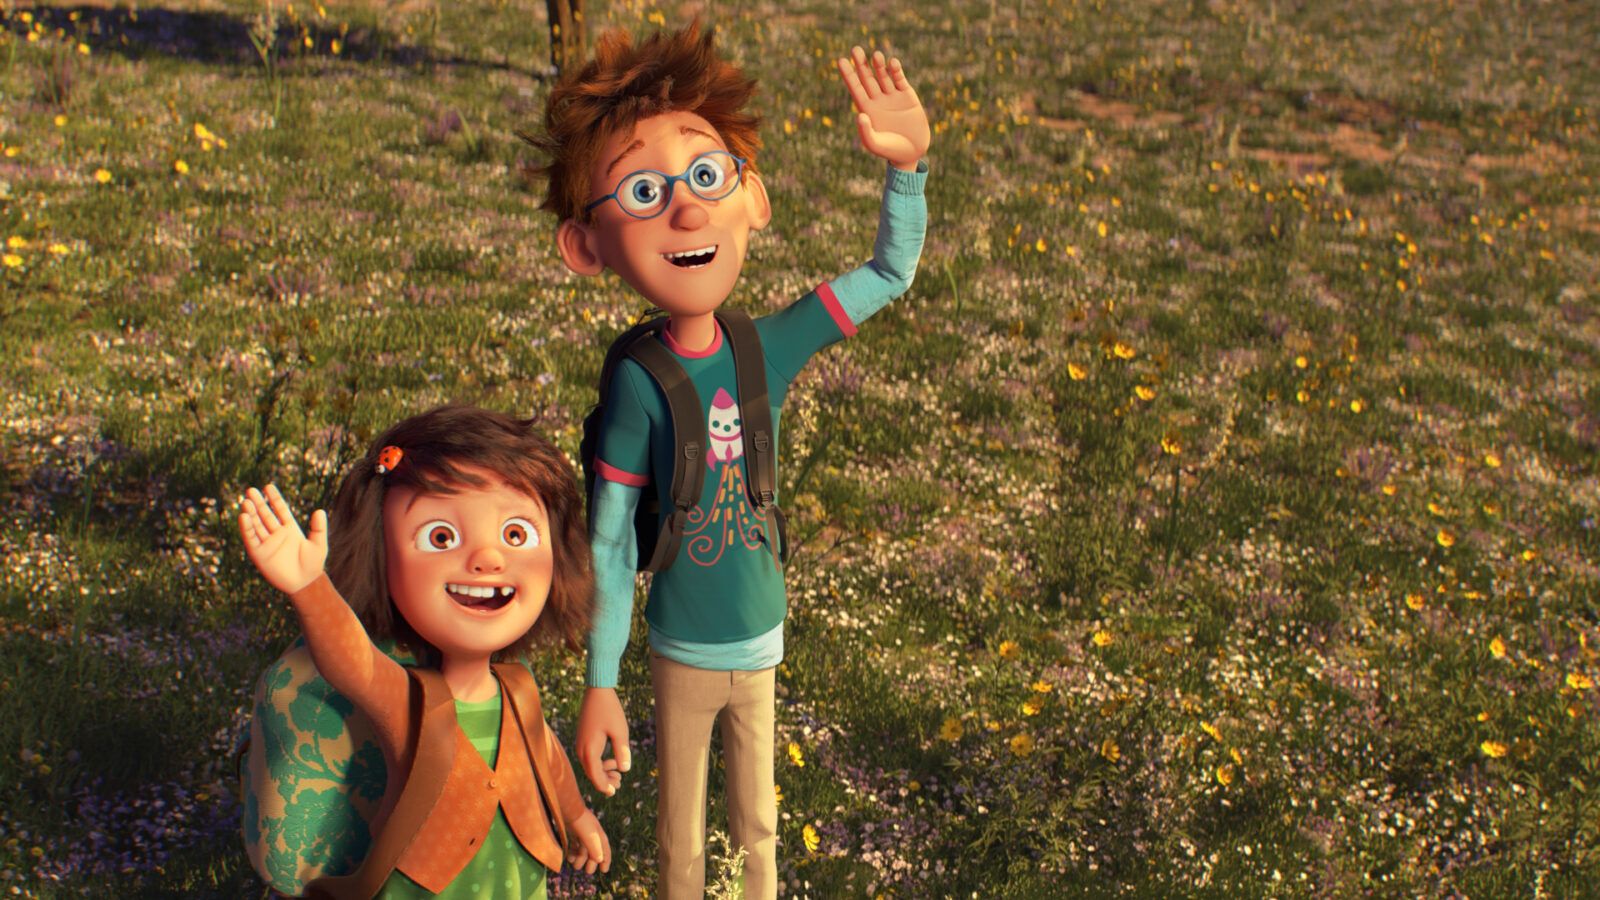 Filmstill aus dem Animationsfilm Peterchens Mondfahrt: Ein Junge und ein kleines Mädchen blicken Richtung Himmel und winken